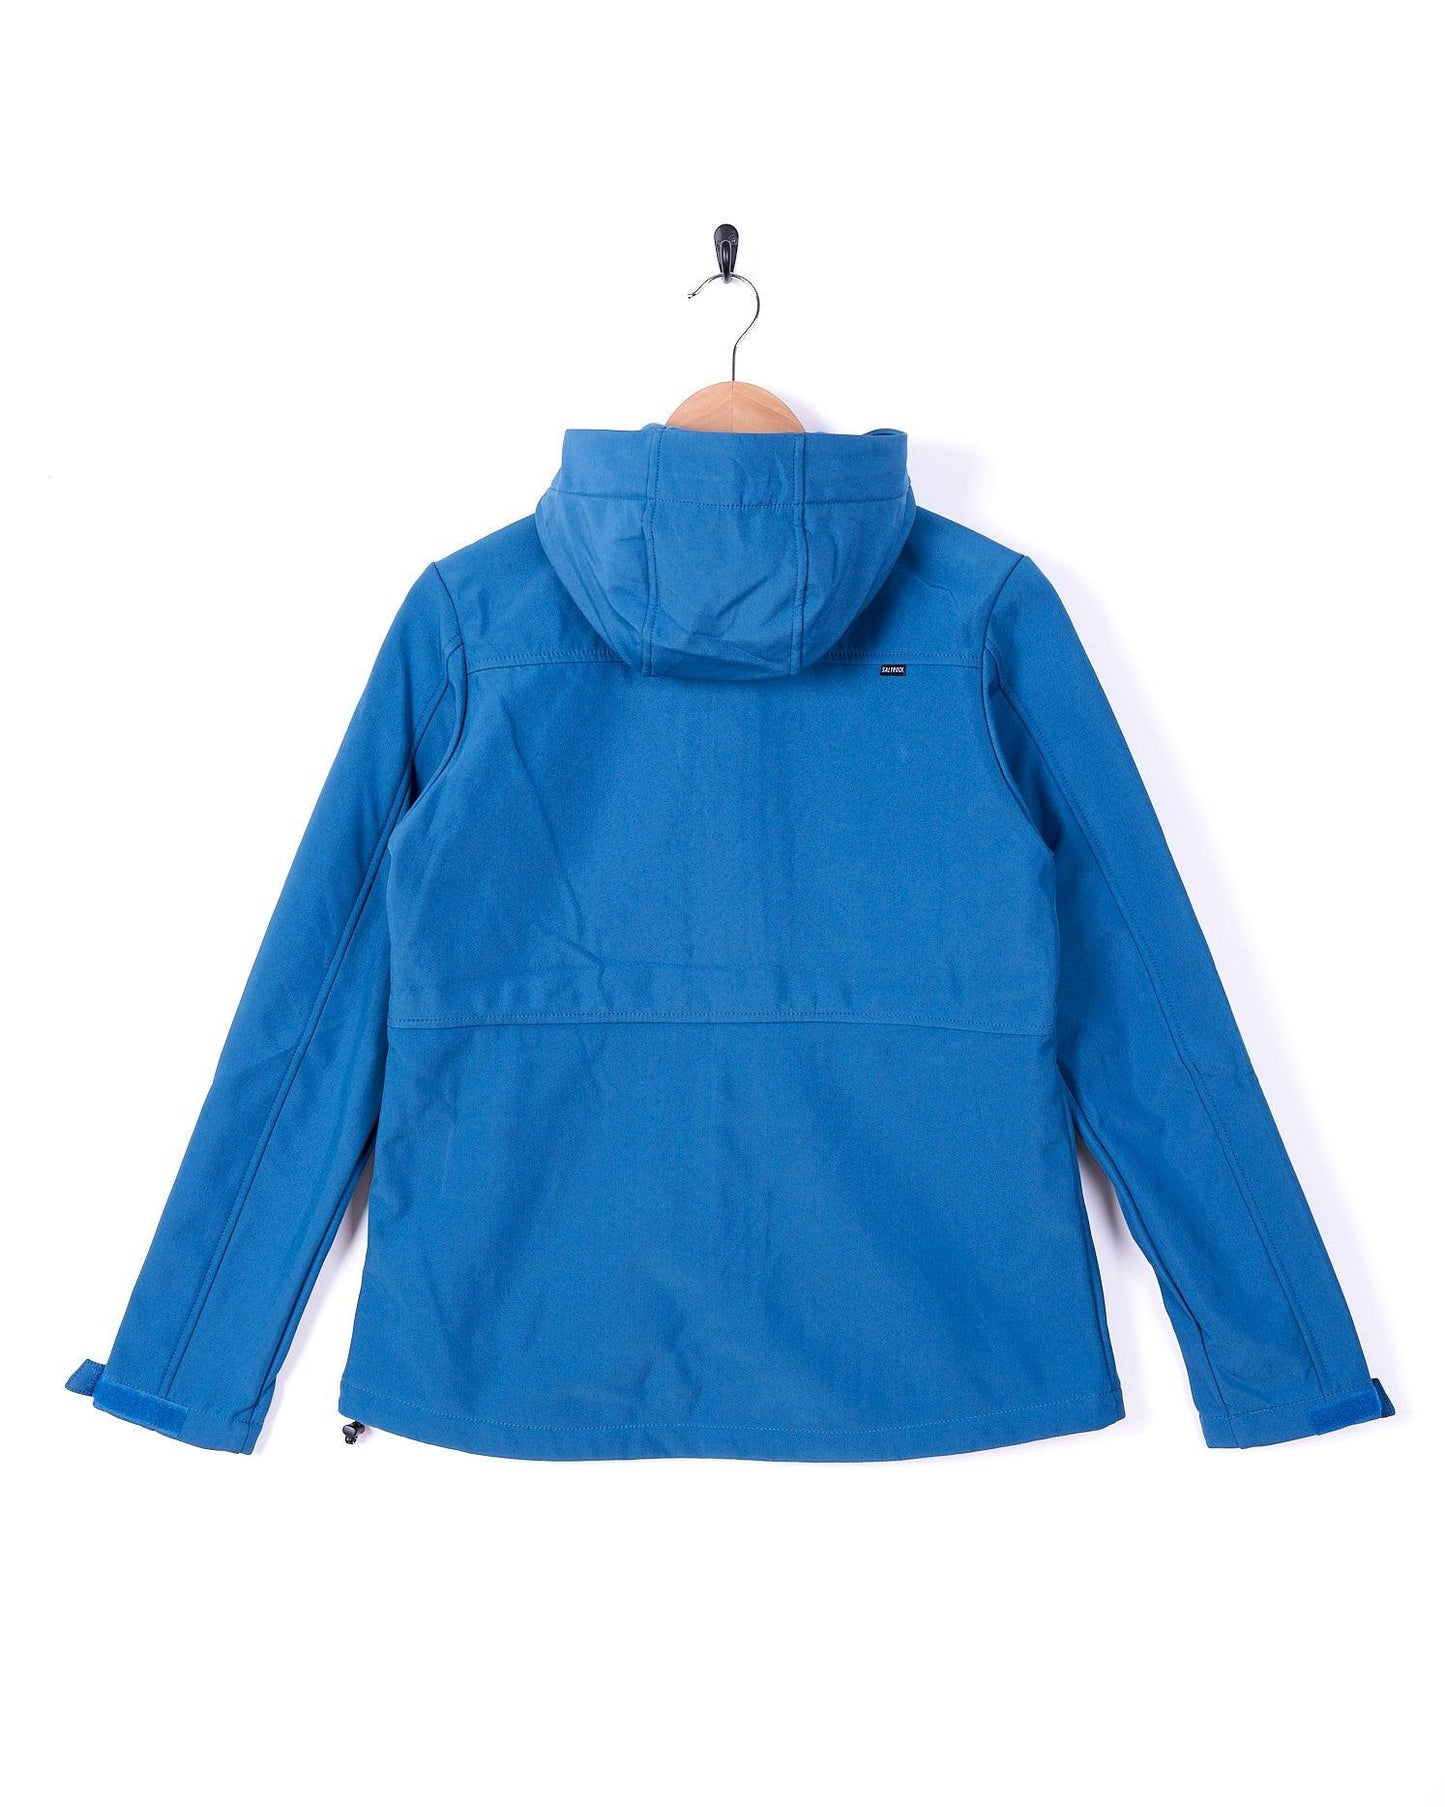 Solae - Womens Softshell Jacket - Blue - Saltrock